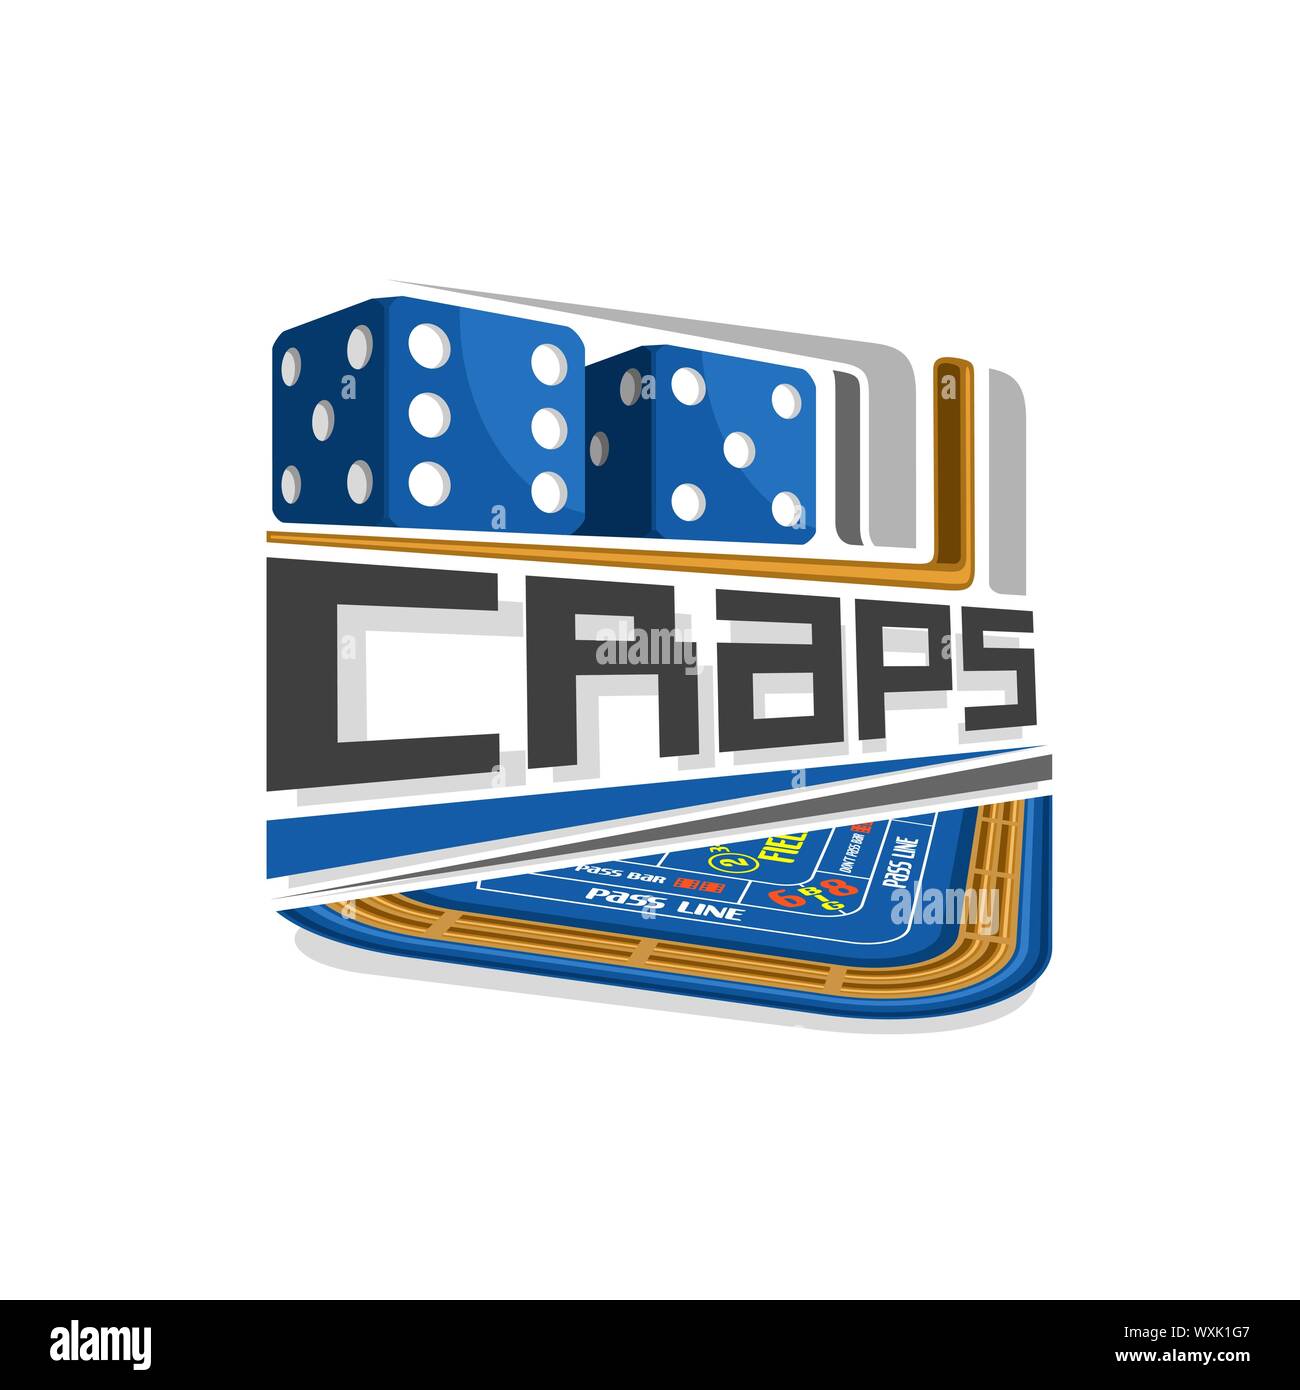 Il logo del vettore di Craps gamble: coppia di dadi blu a cubetti con combinazione di cinque e sei, testo - craps sopra tavolo da gioco per gioco d'azzardo. Illustrazione Vettoriale